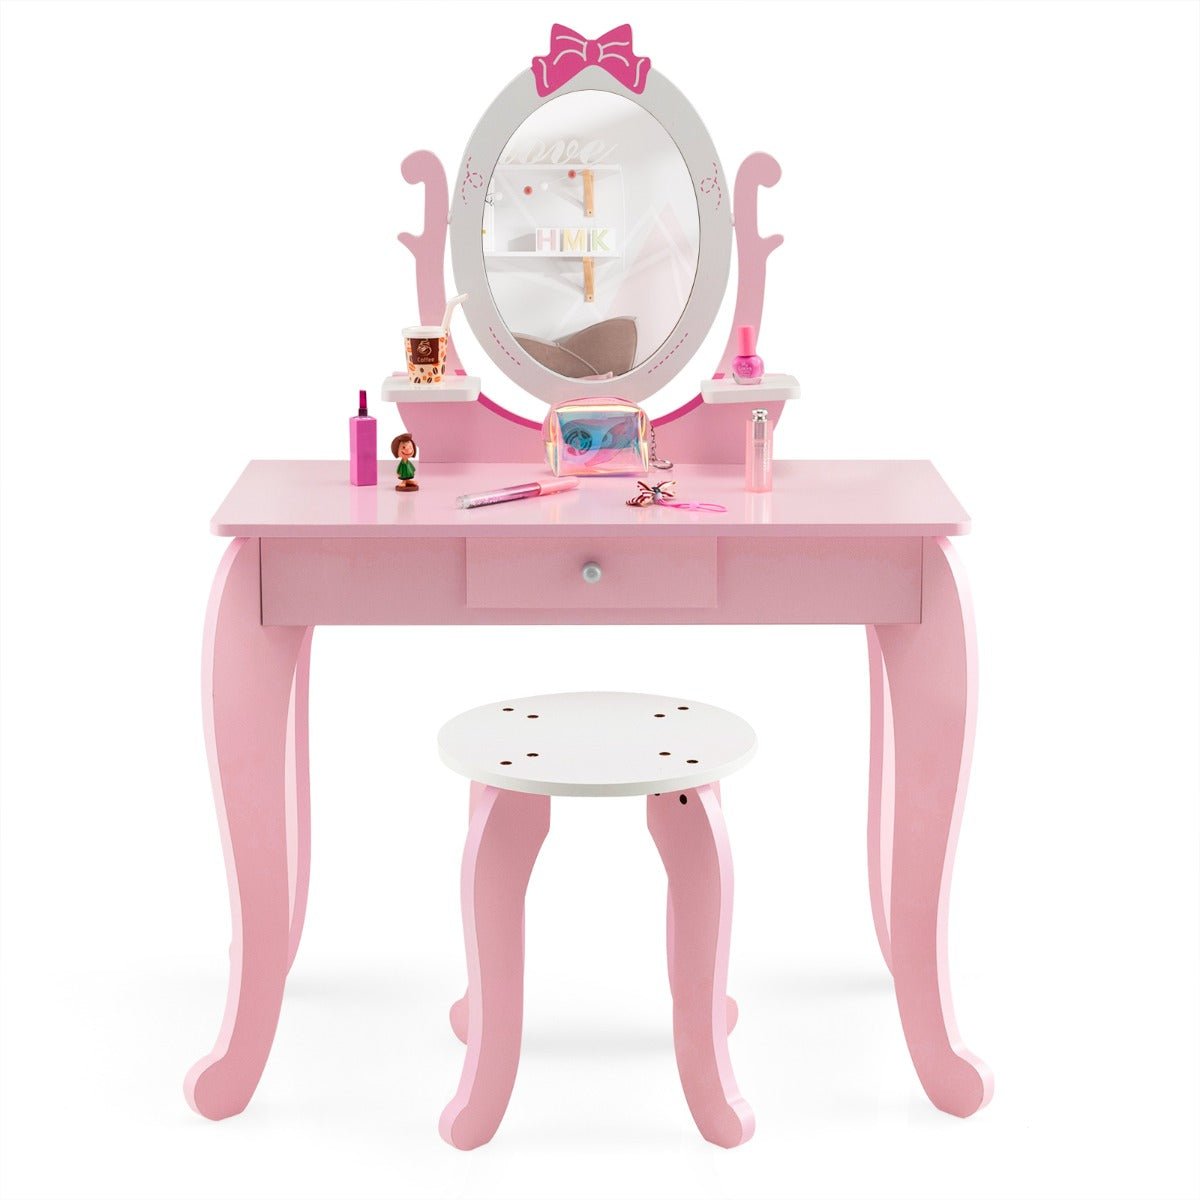 Growing Elegance: Children's Vanity Table Set with Adjustable Mirror